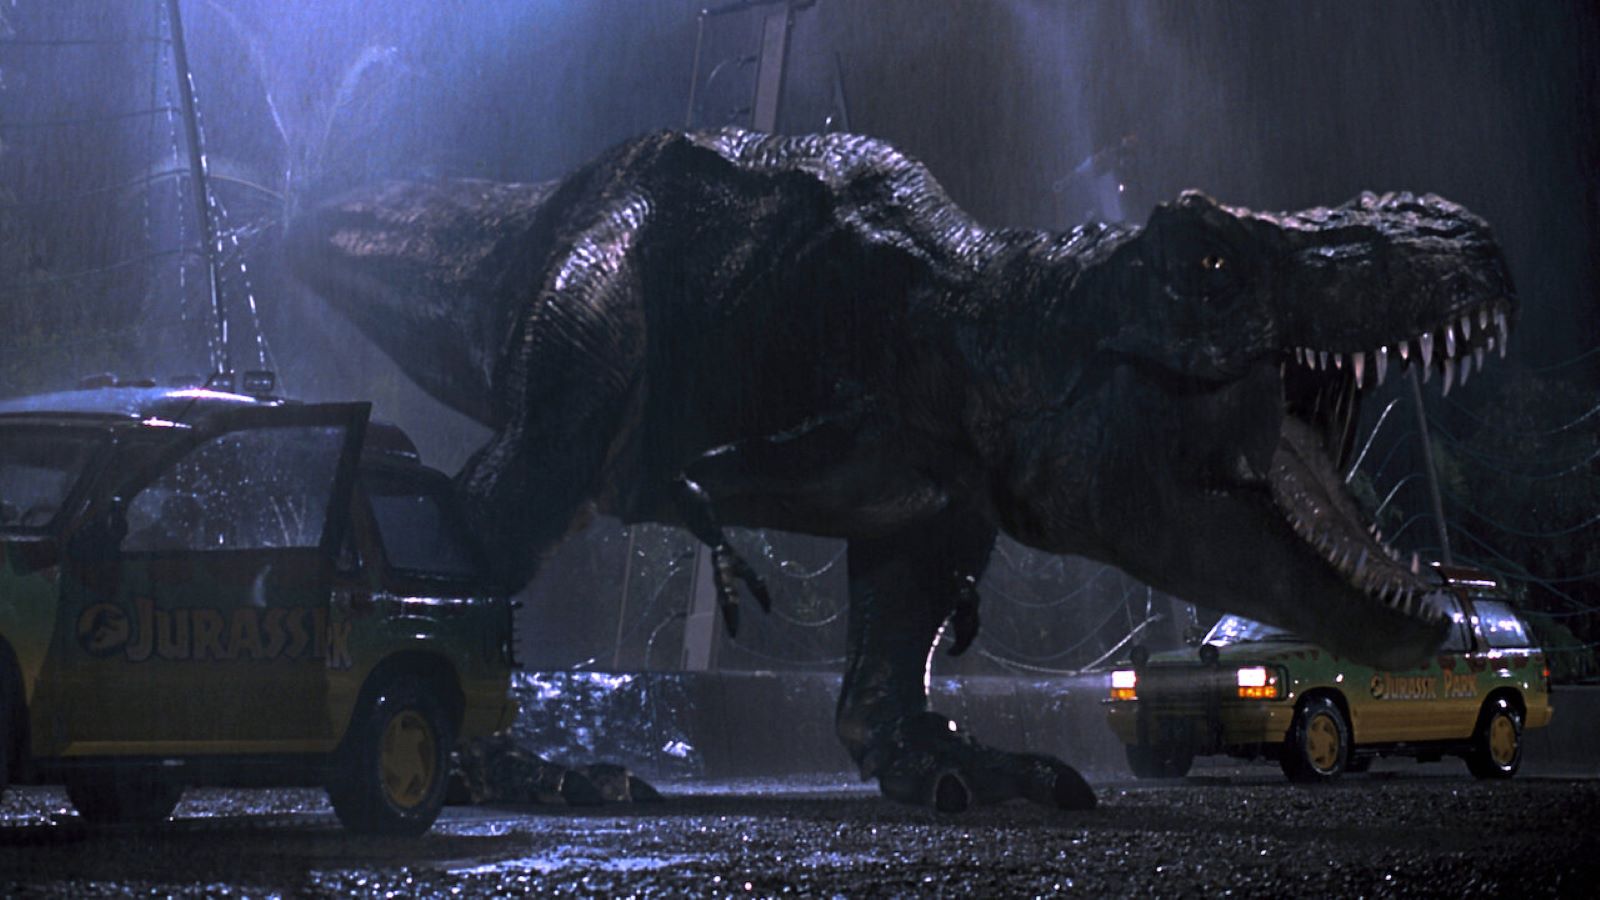 Jurassic Park, stasera 8 aprile su Italia 1: trama e cast del film di Steven Spielberg